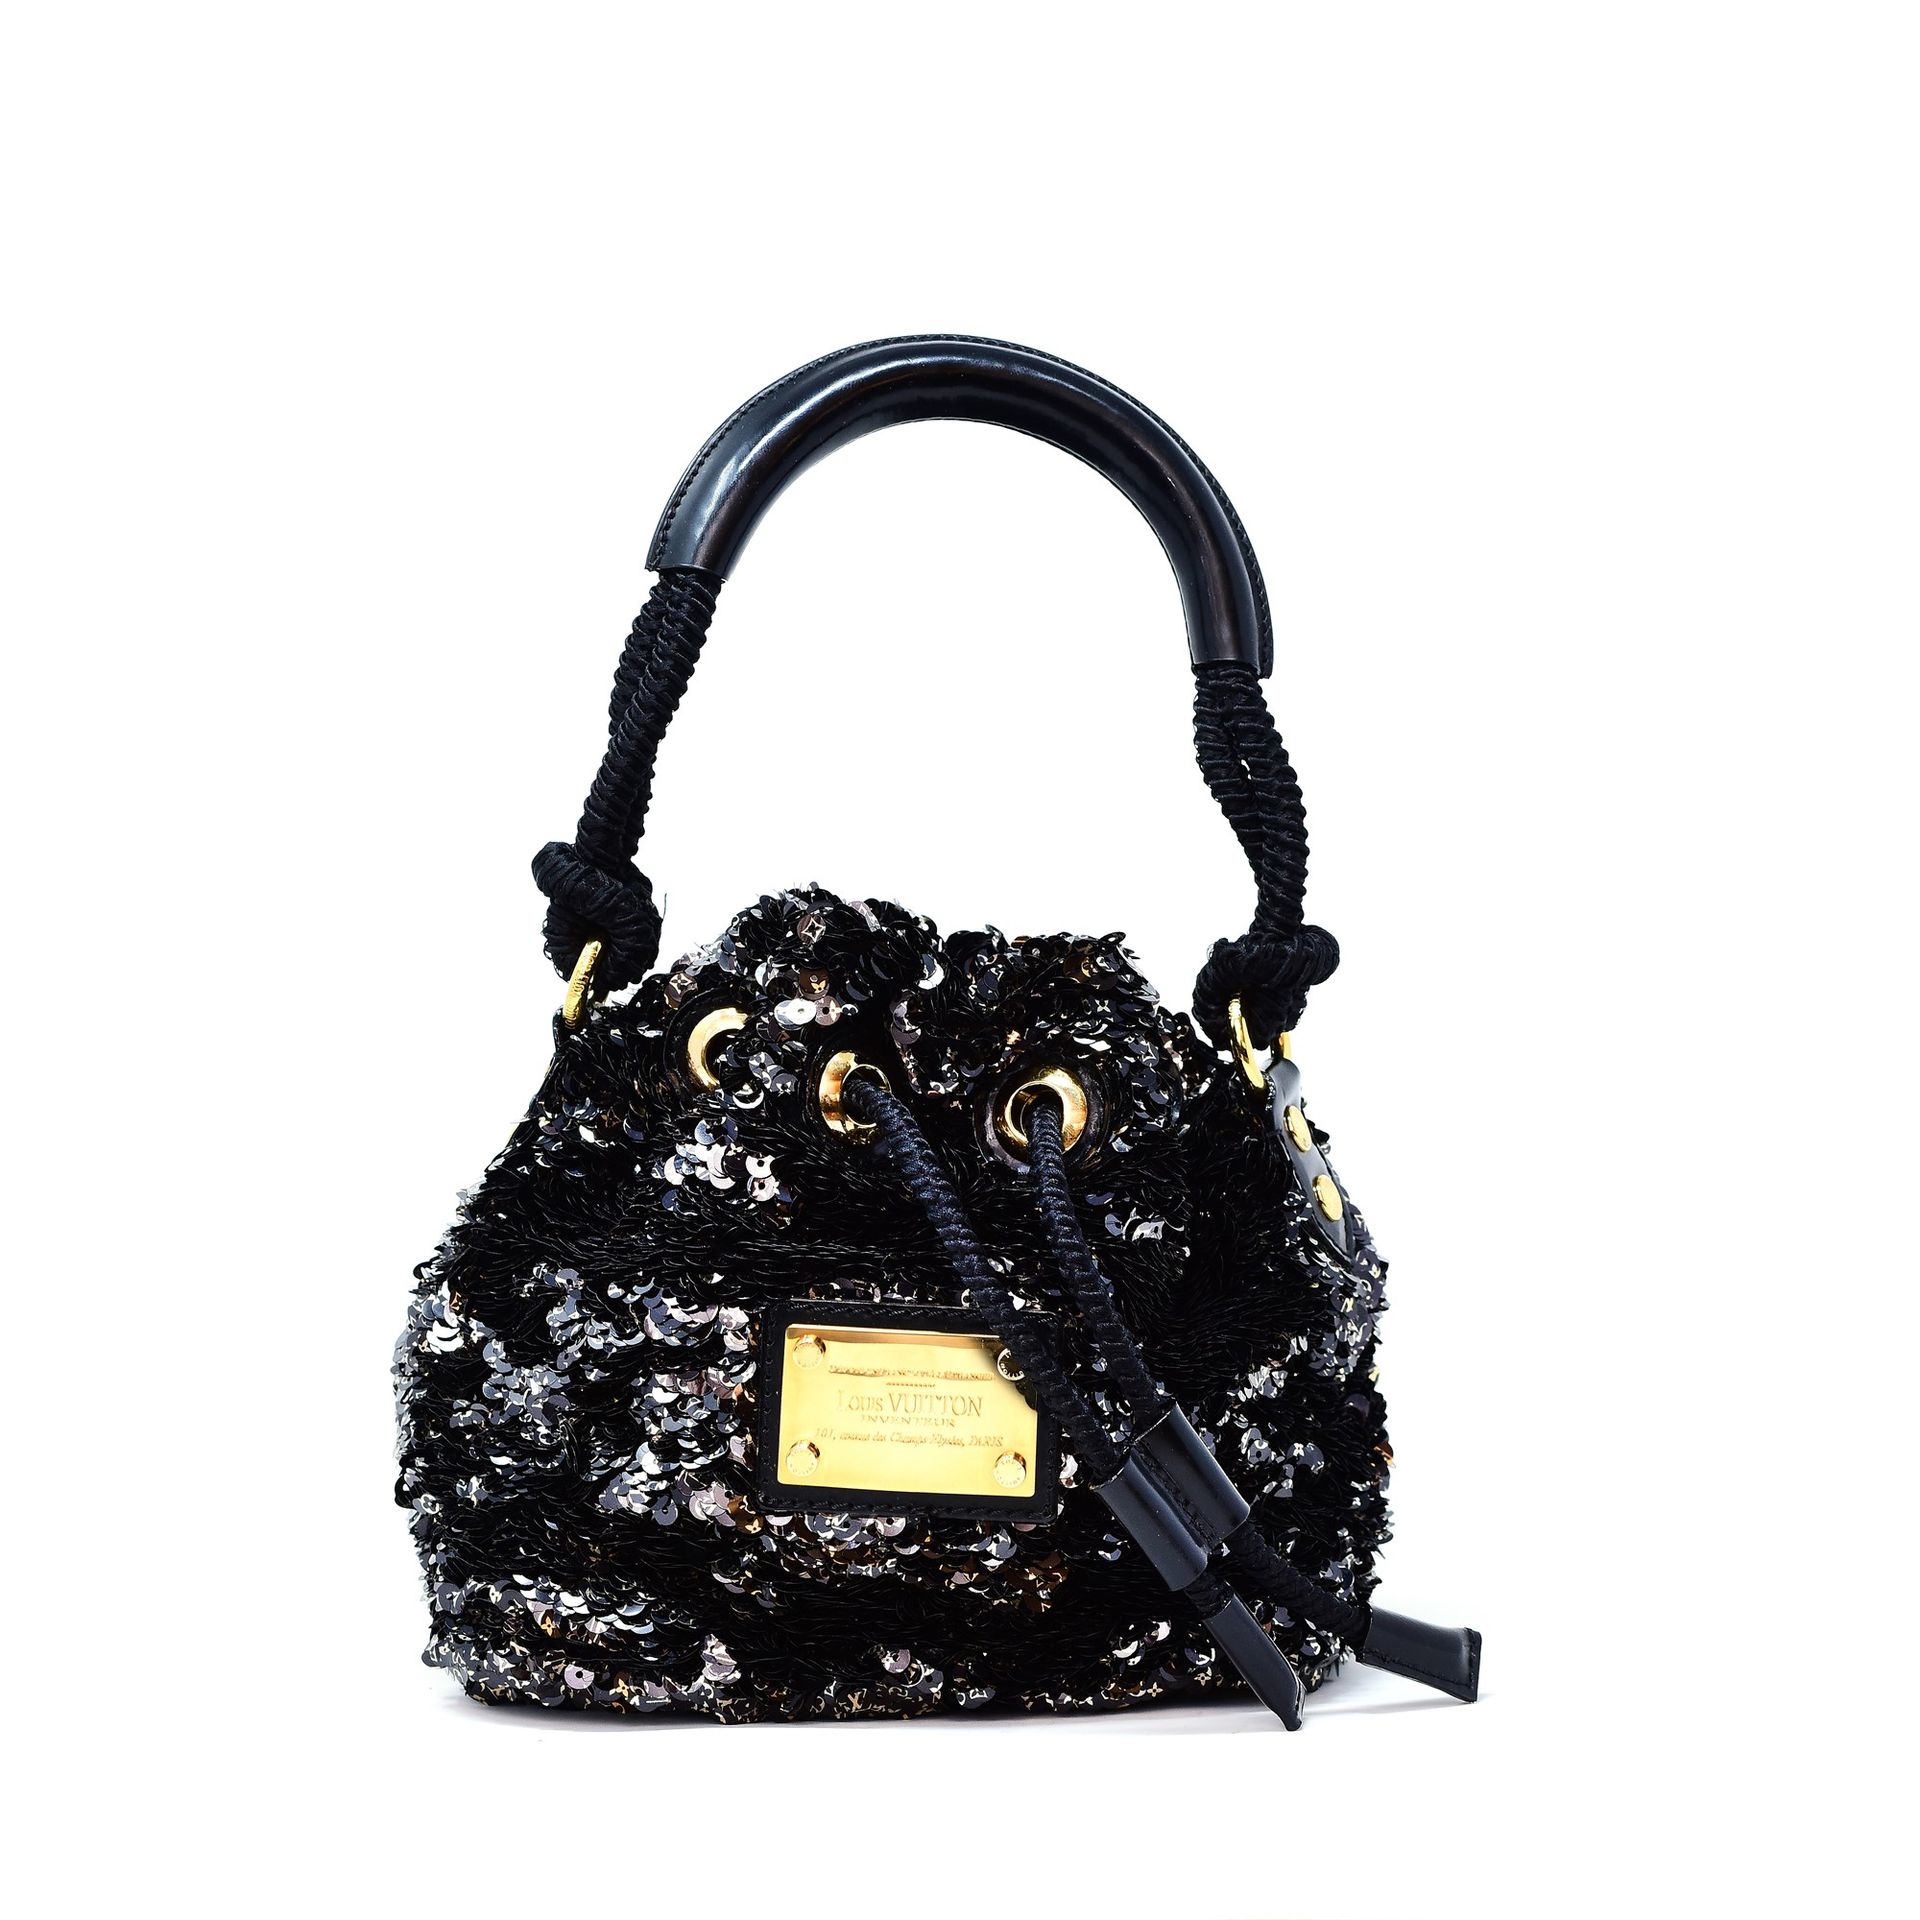 LOUIS VUITTON Mini Noe handbag, Croisière 2010 collection, designed by Marc Jaco&hellip;